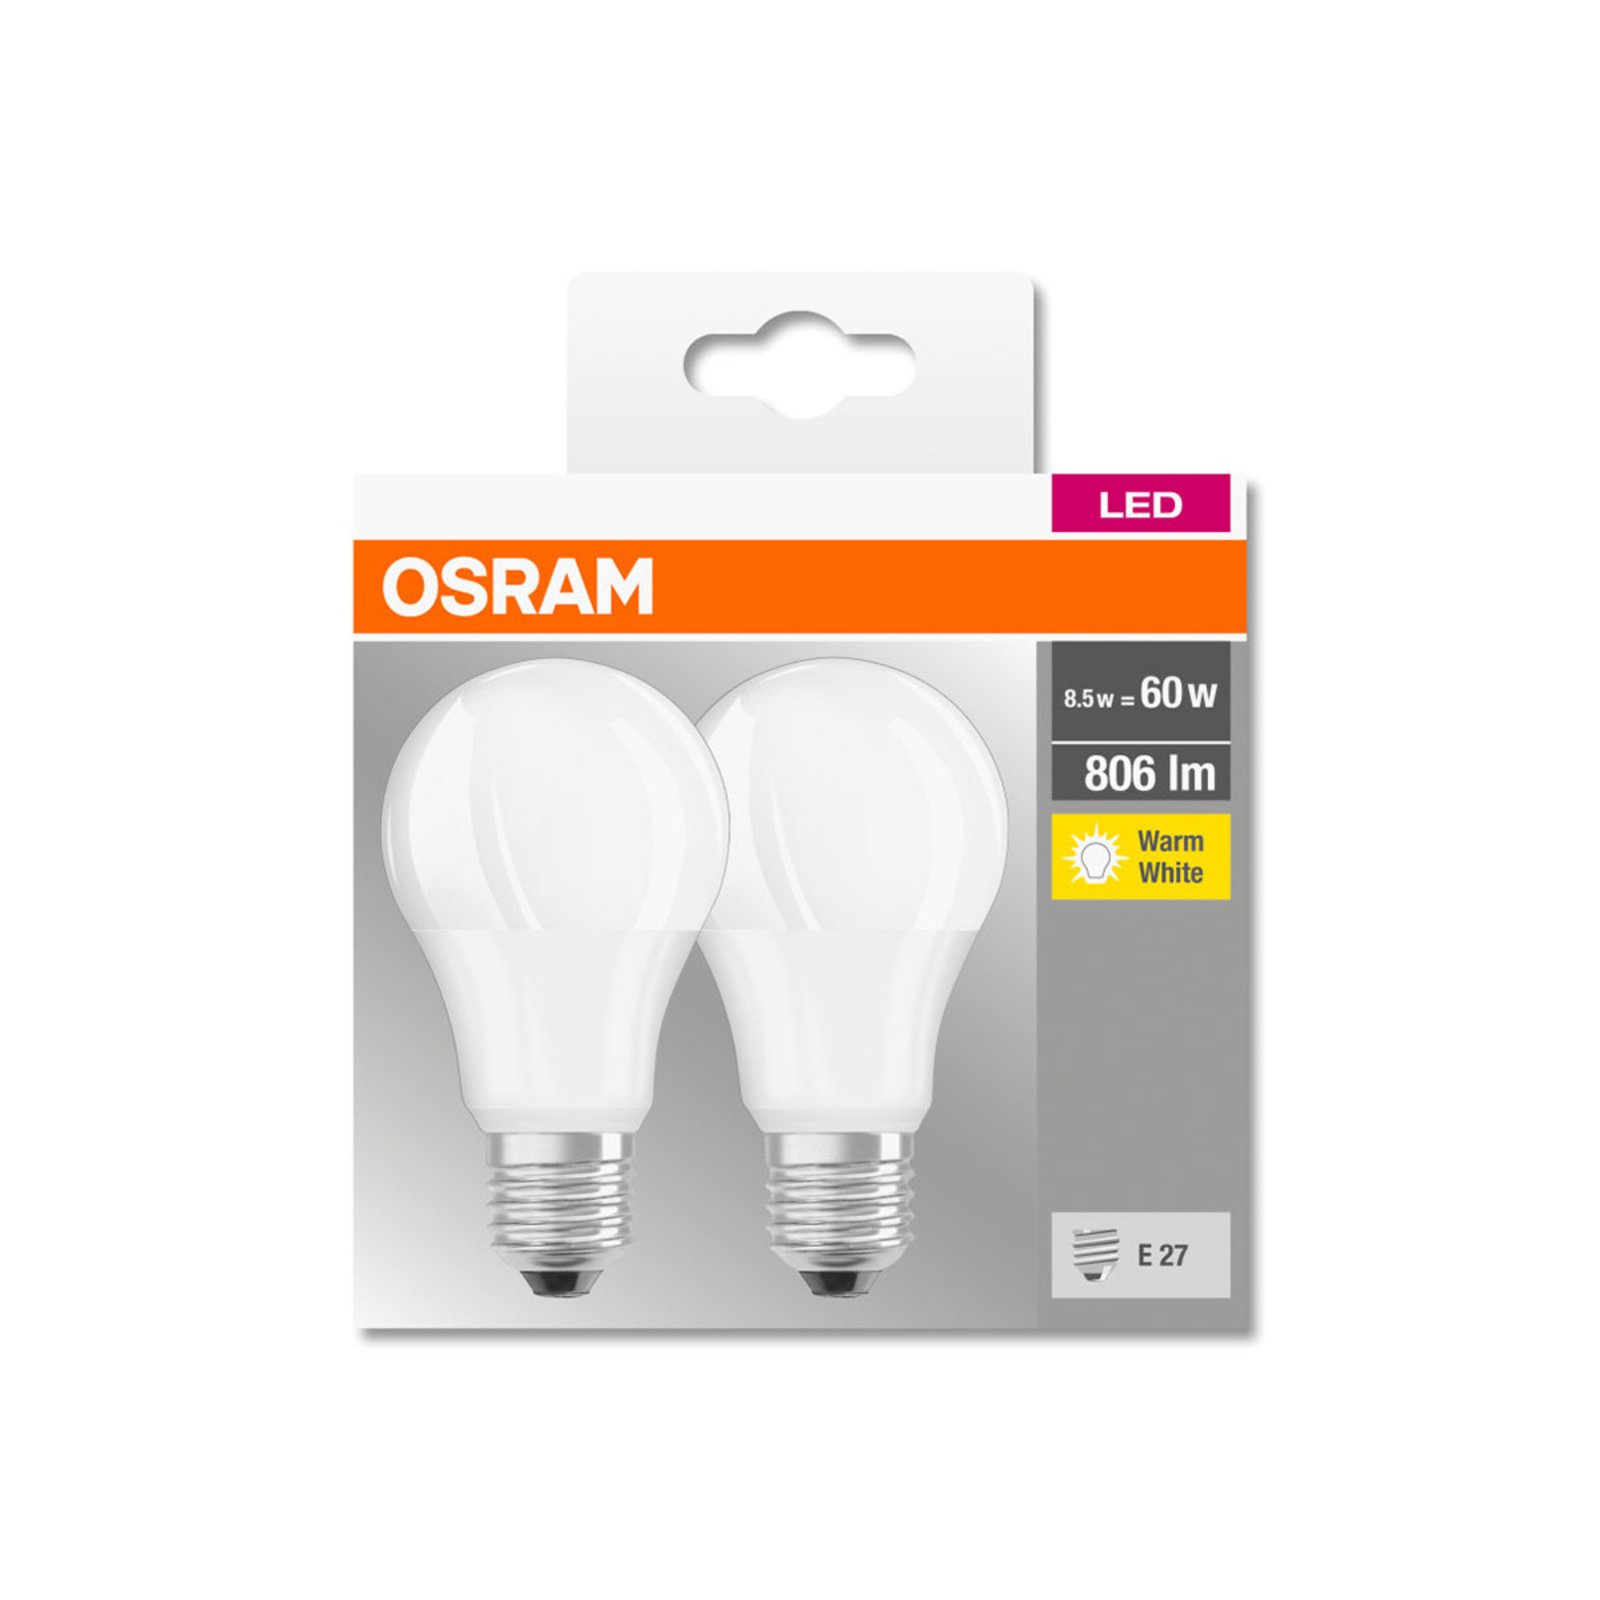 OSRAM żarówka LED Classic E27 8,5W 806lm 2 szt.